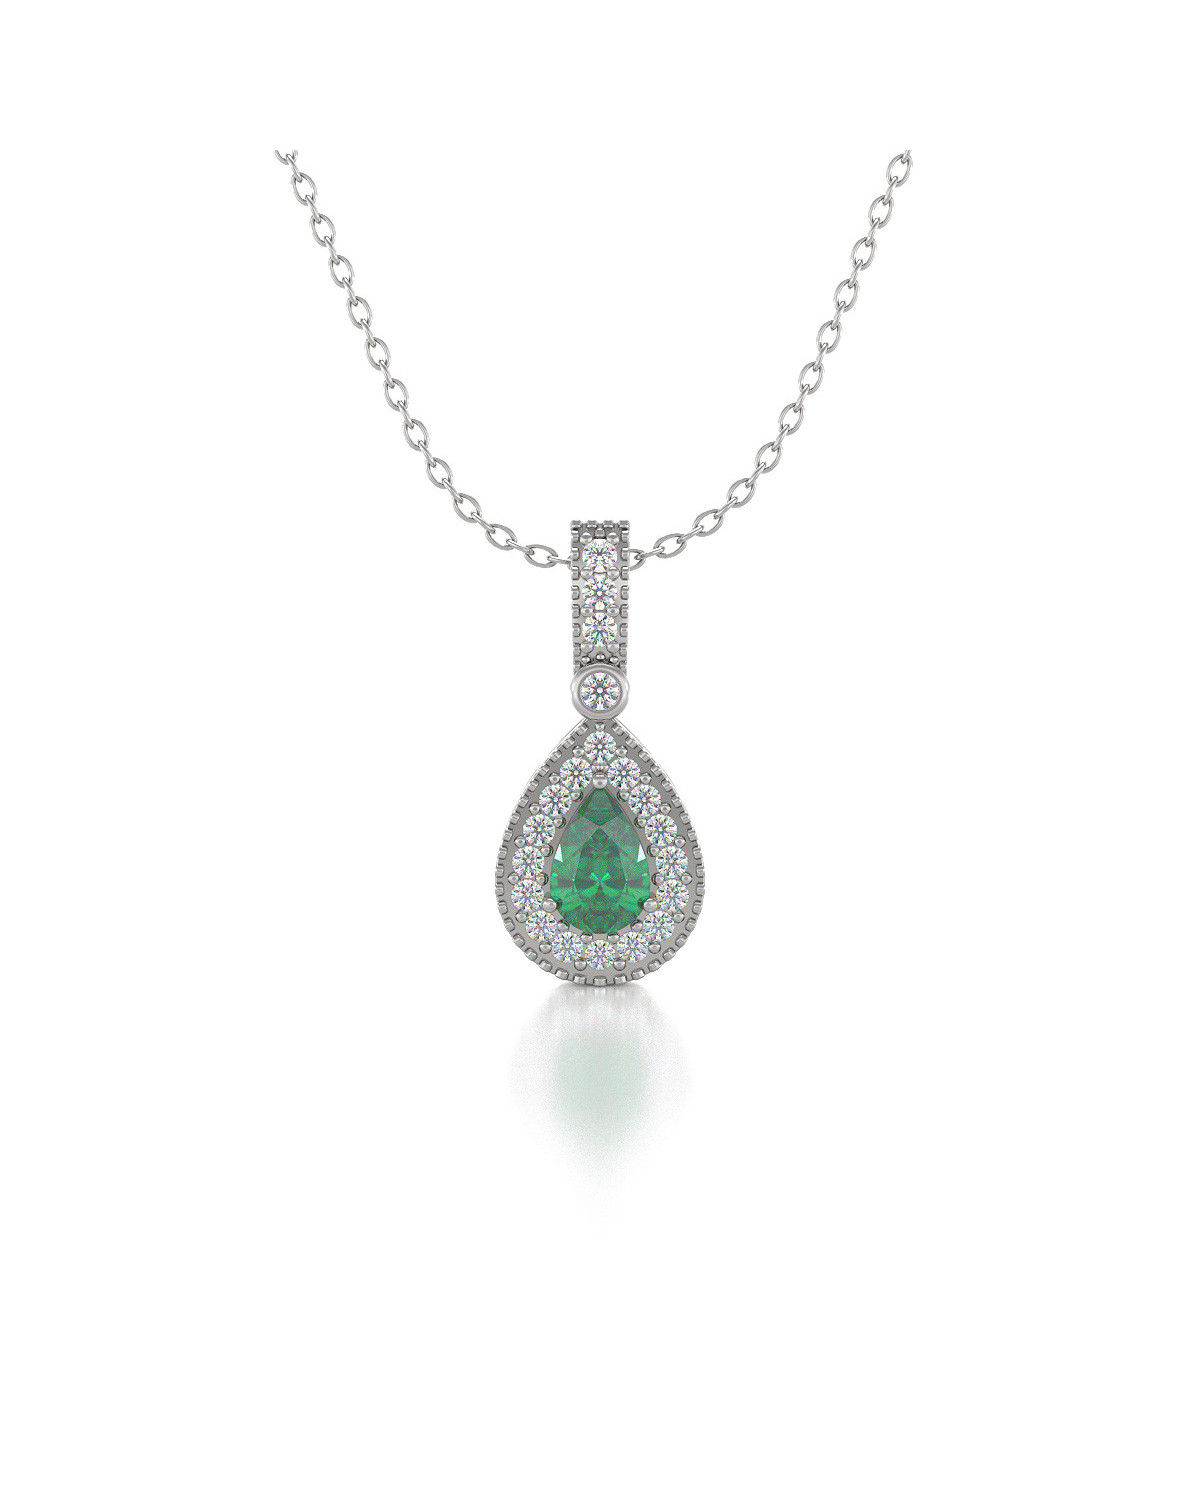 925 Silver Emerald Diamonds Necklace Pendant Chain included